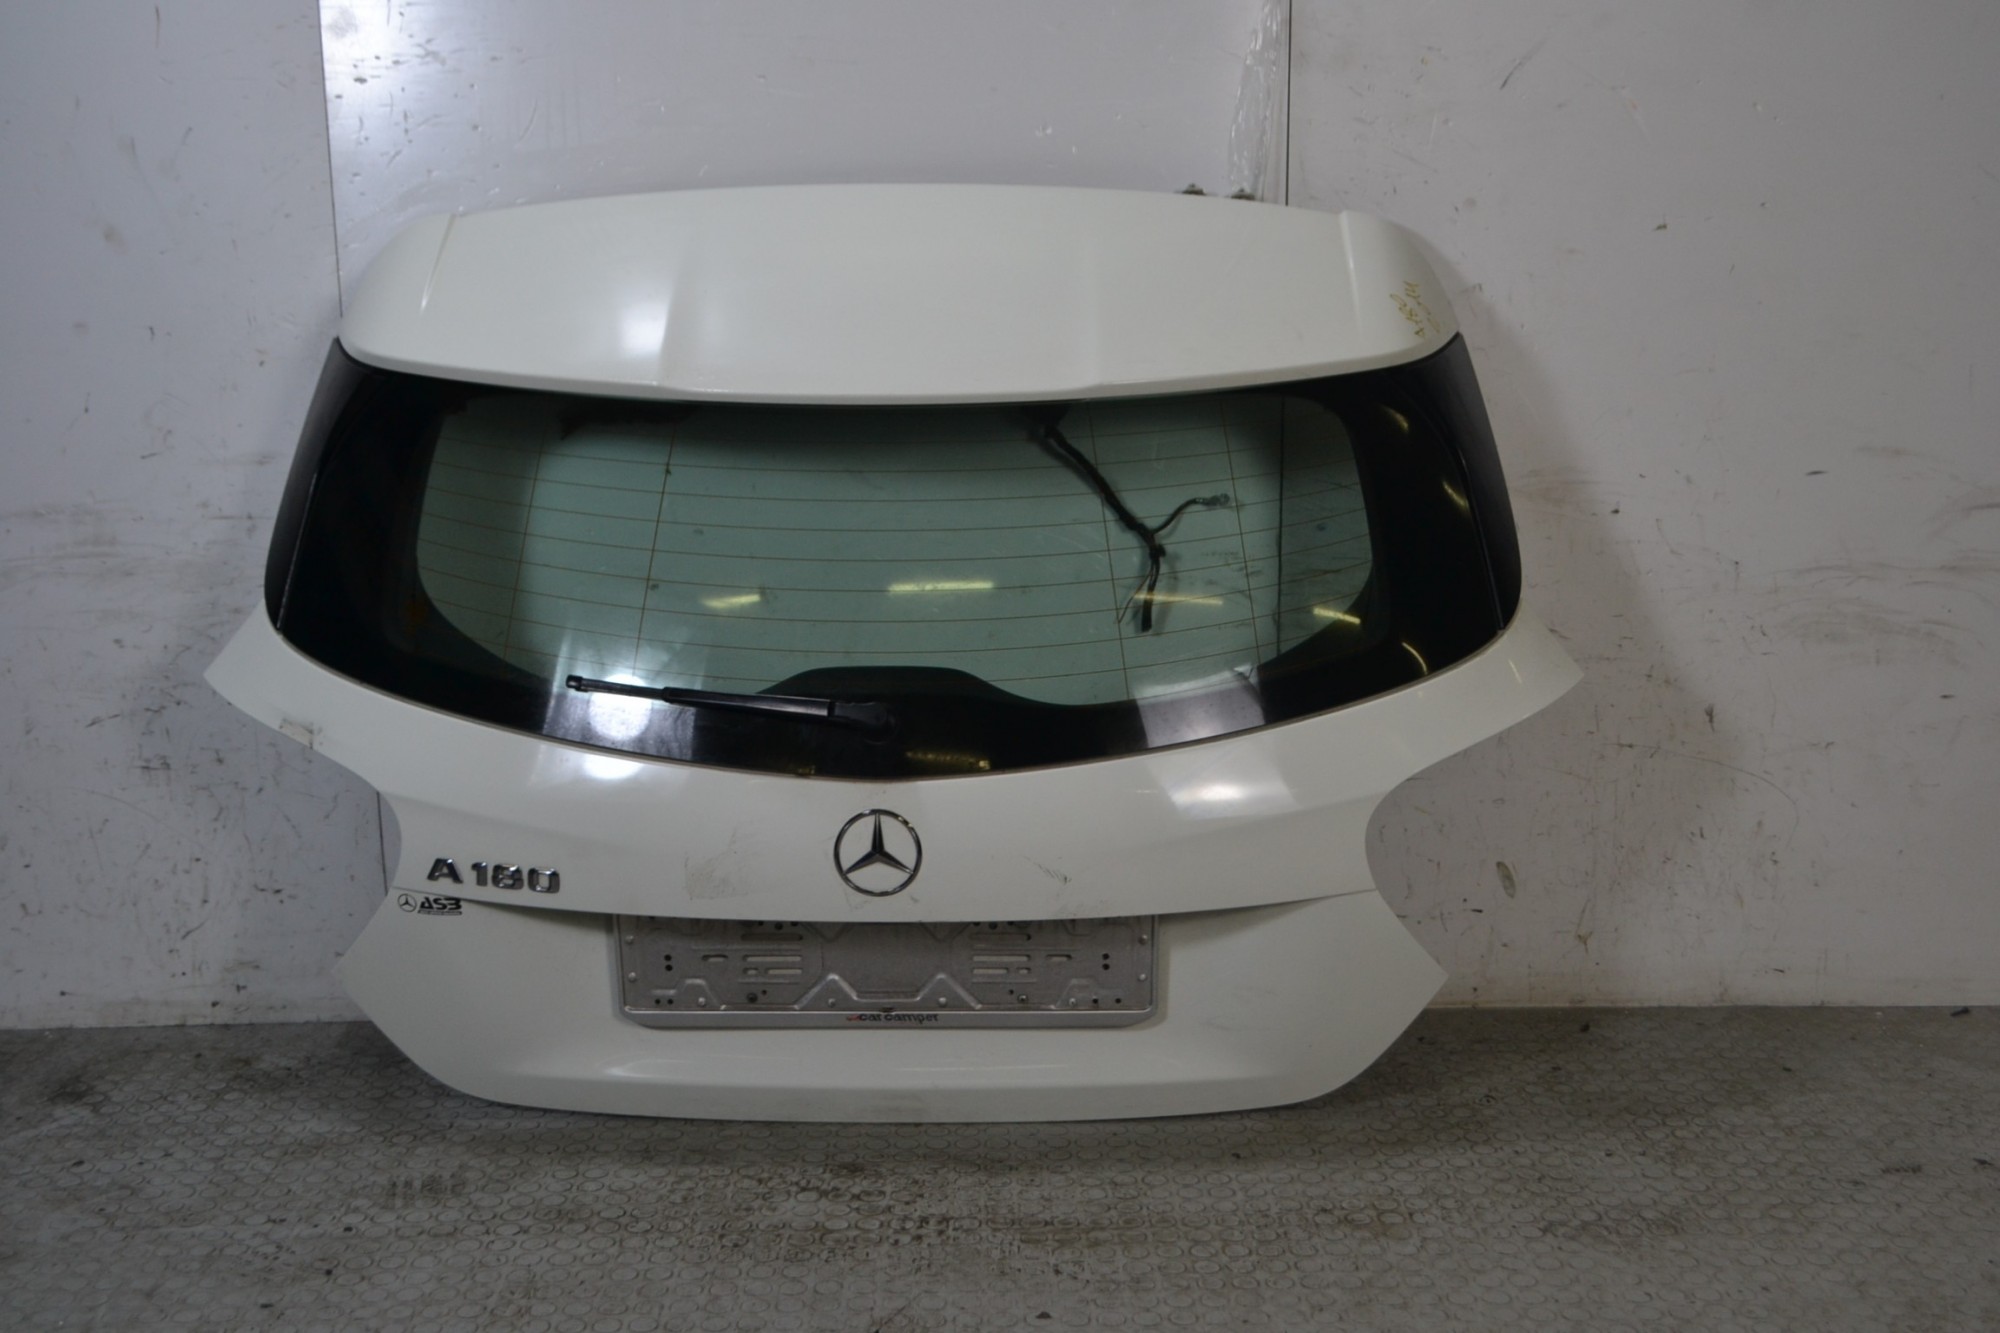 Portellone bagagliaio posteriore Mercedes Classe A W176 Dal 2012 al 2018 Colore bianco  1674058526899